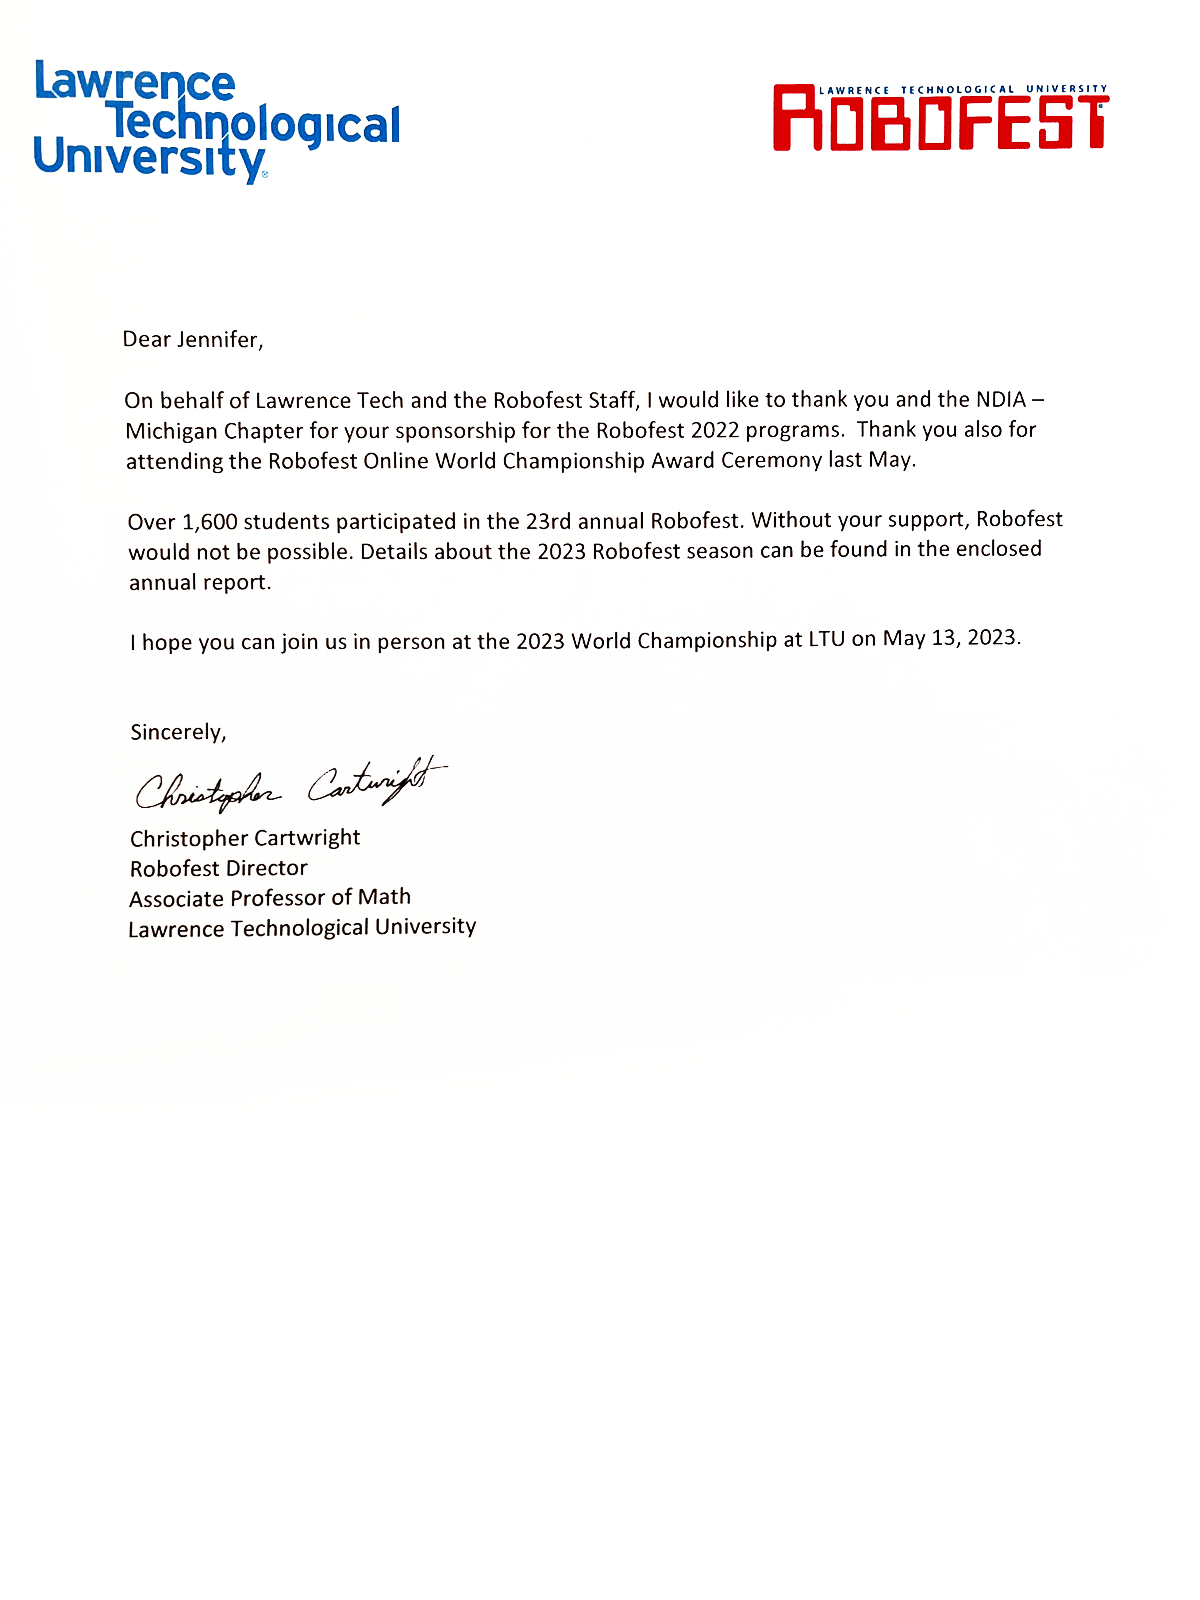 Robofest Sponsorship Letter